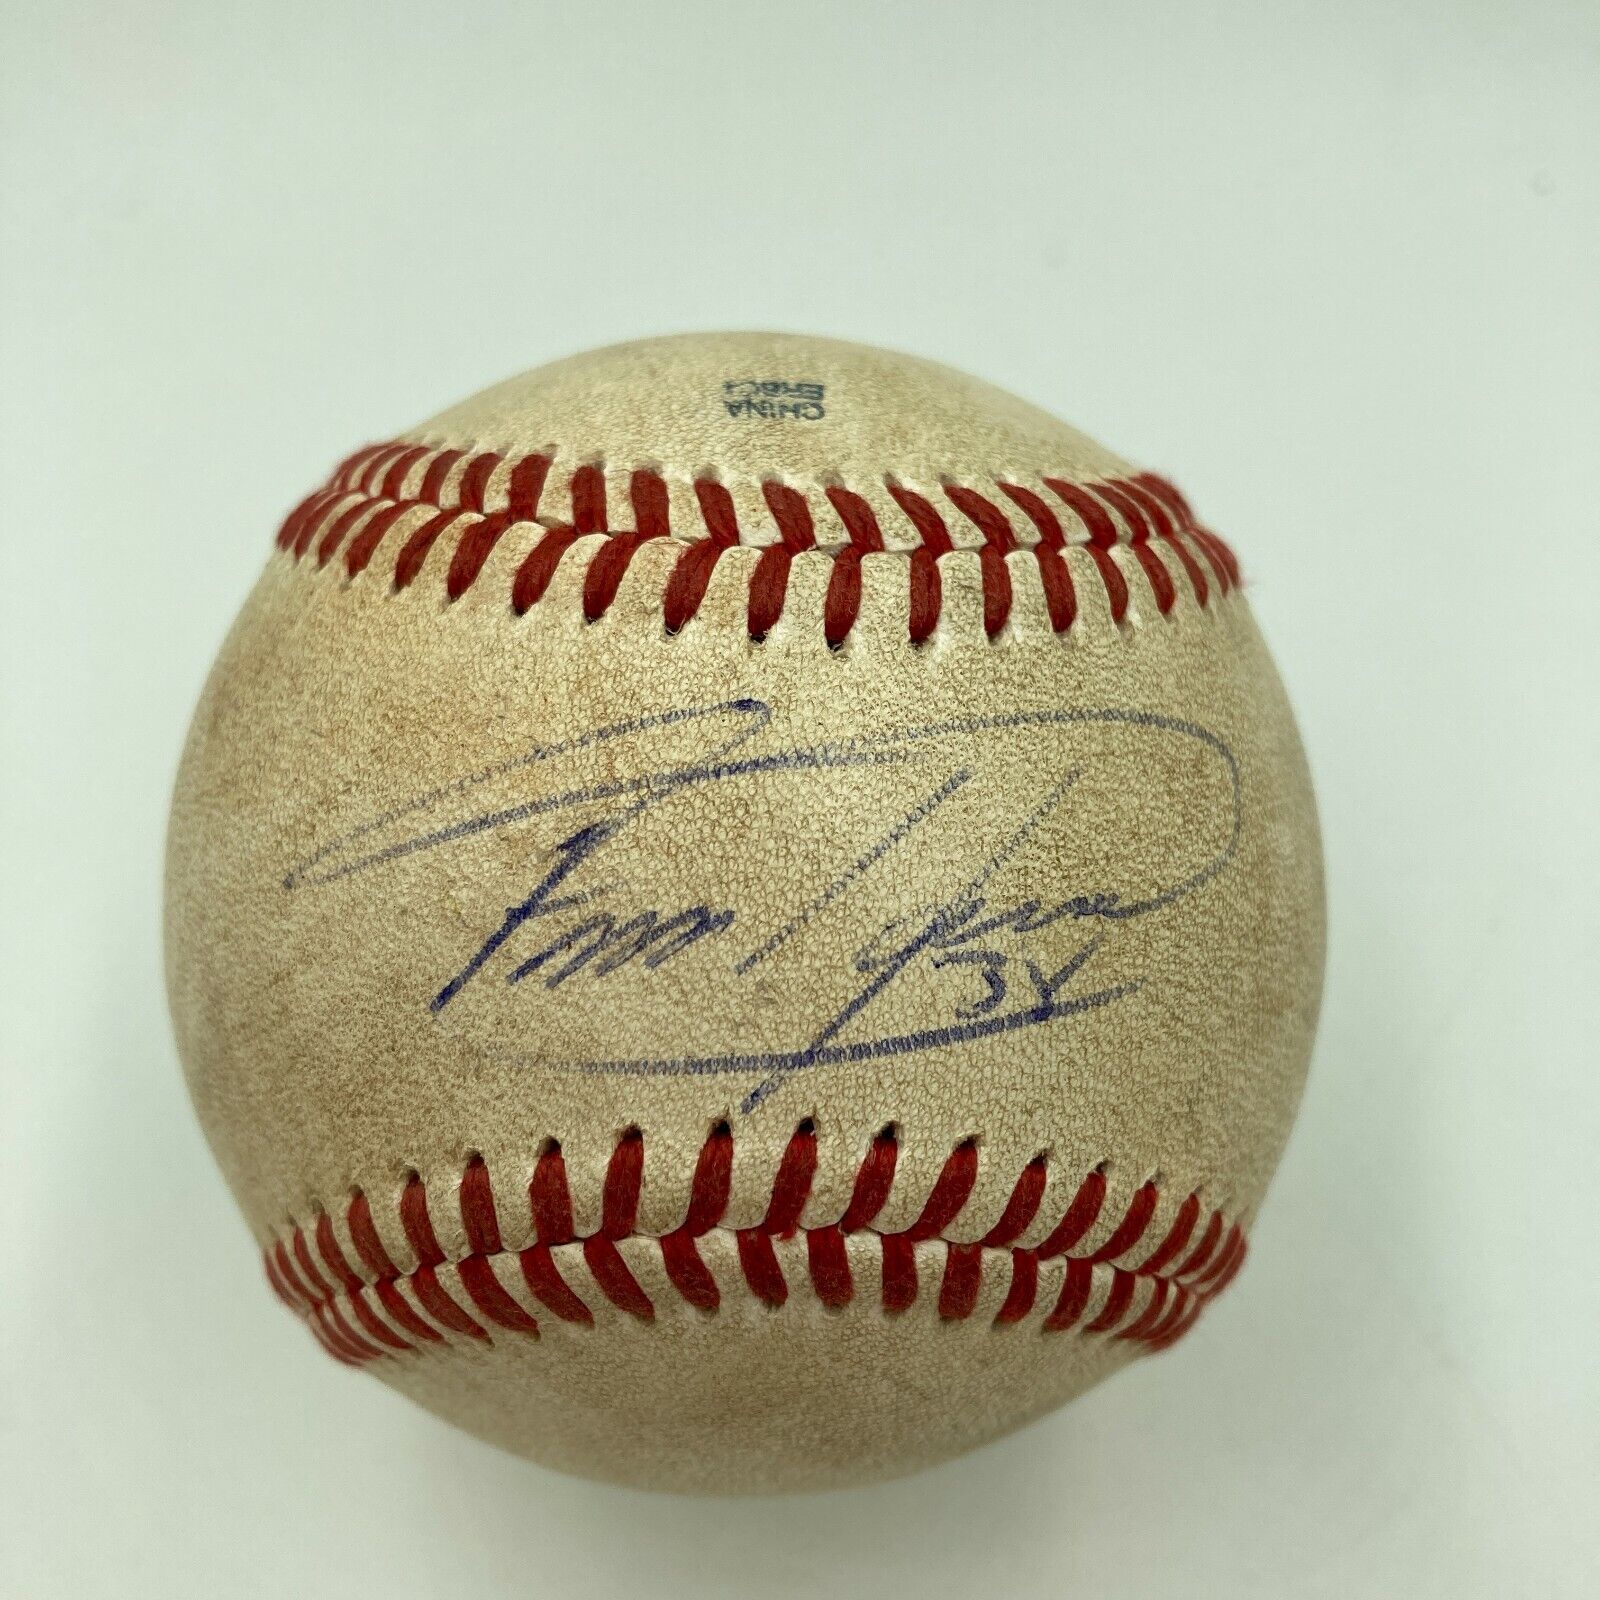 Felix Hernandez Signed Autographed 2009 All Star Game Baseball JSA